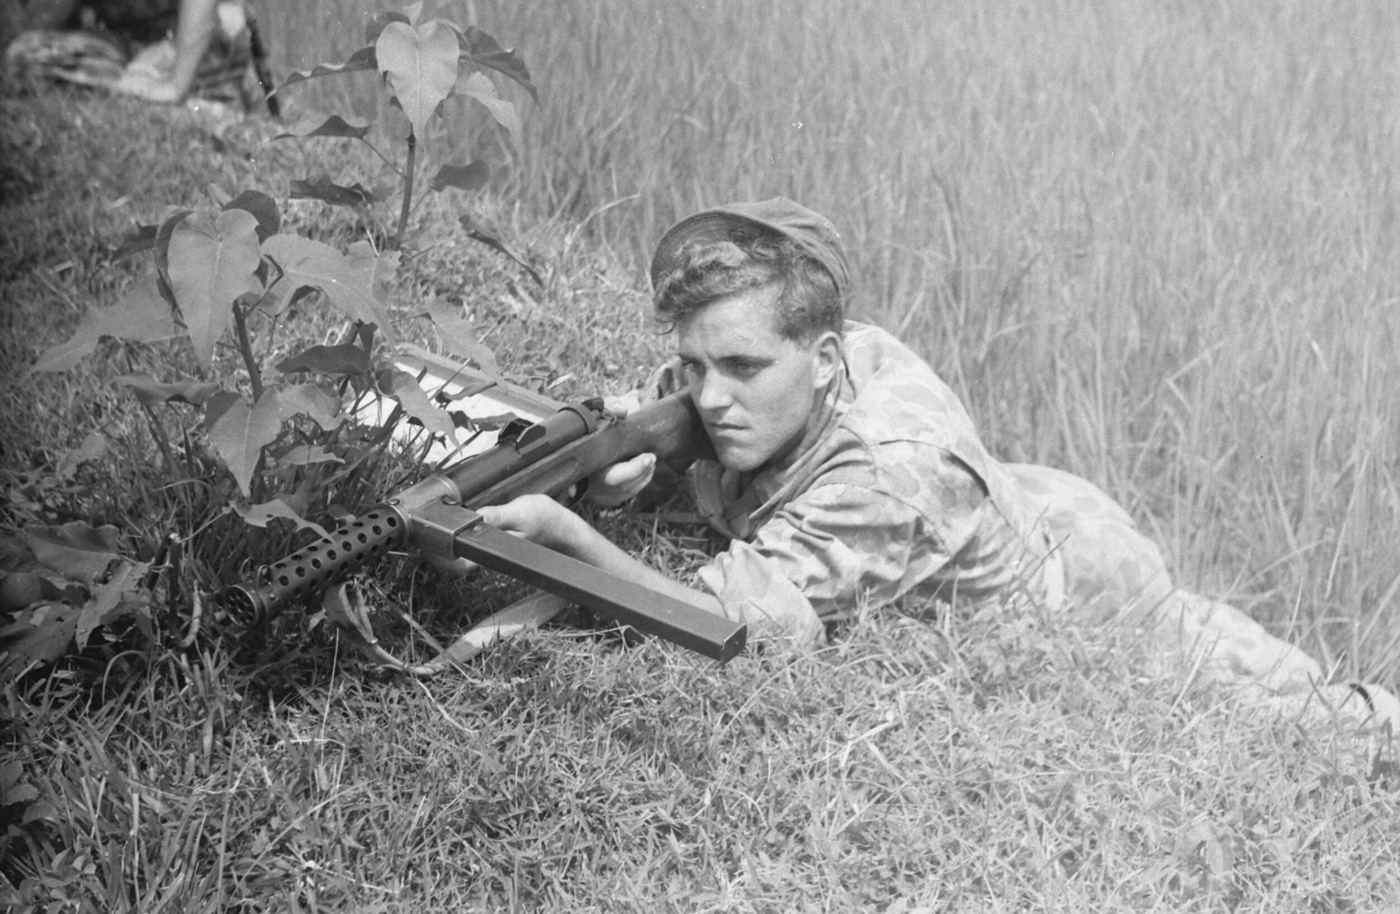 Netherlands soldier prone with Lanchester submachine gun in war